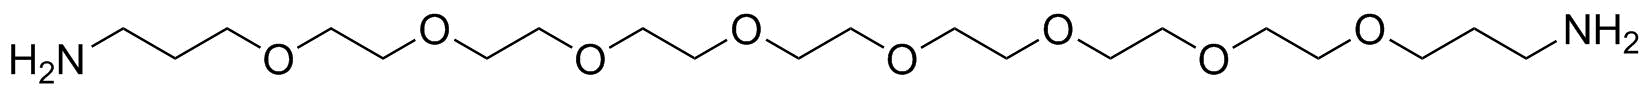 PEG8-bis(C3-amine)